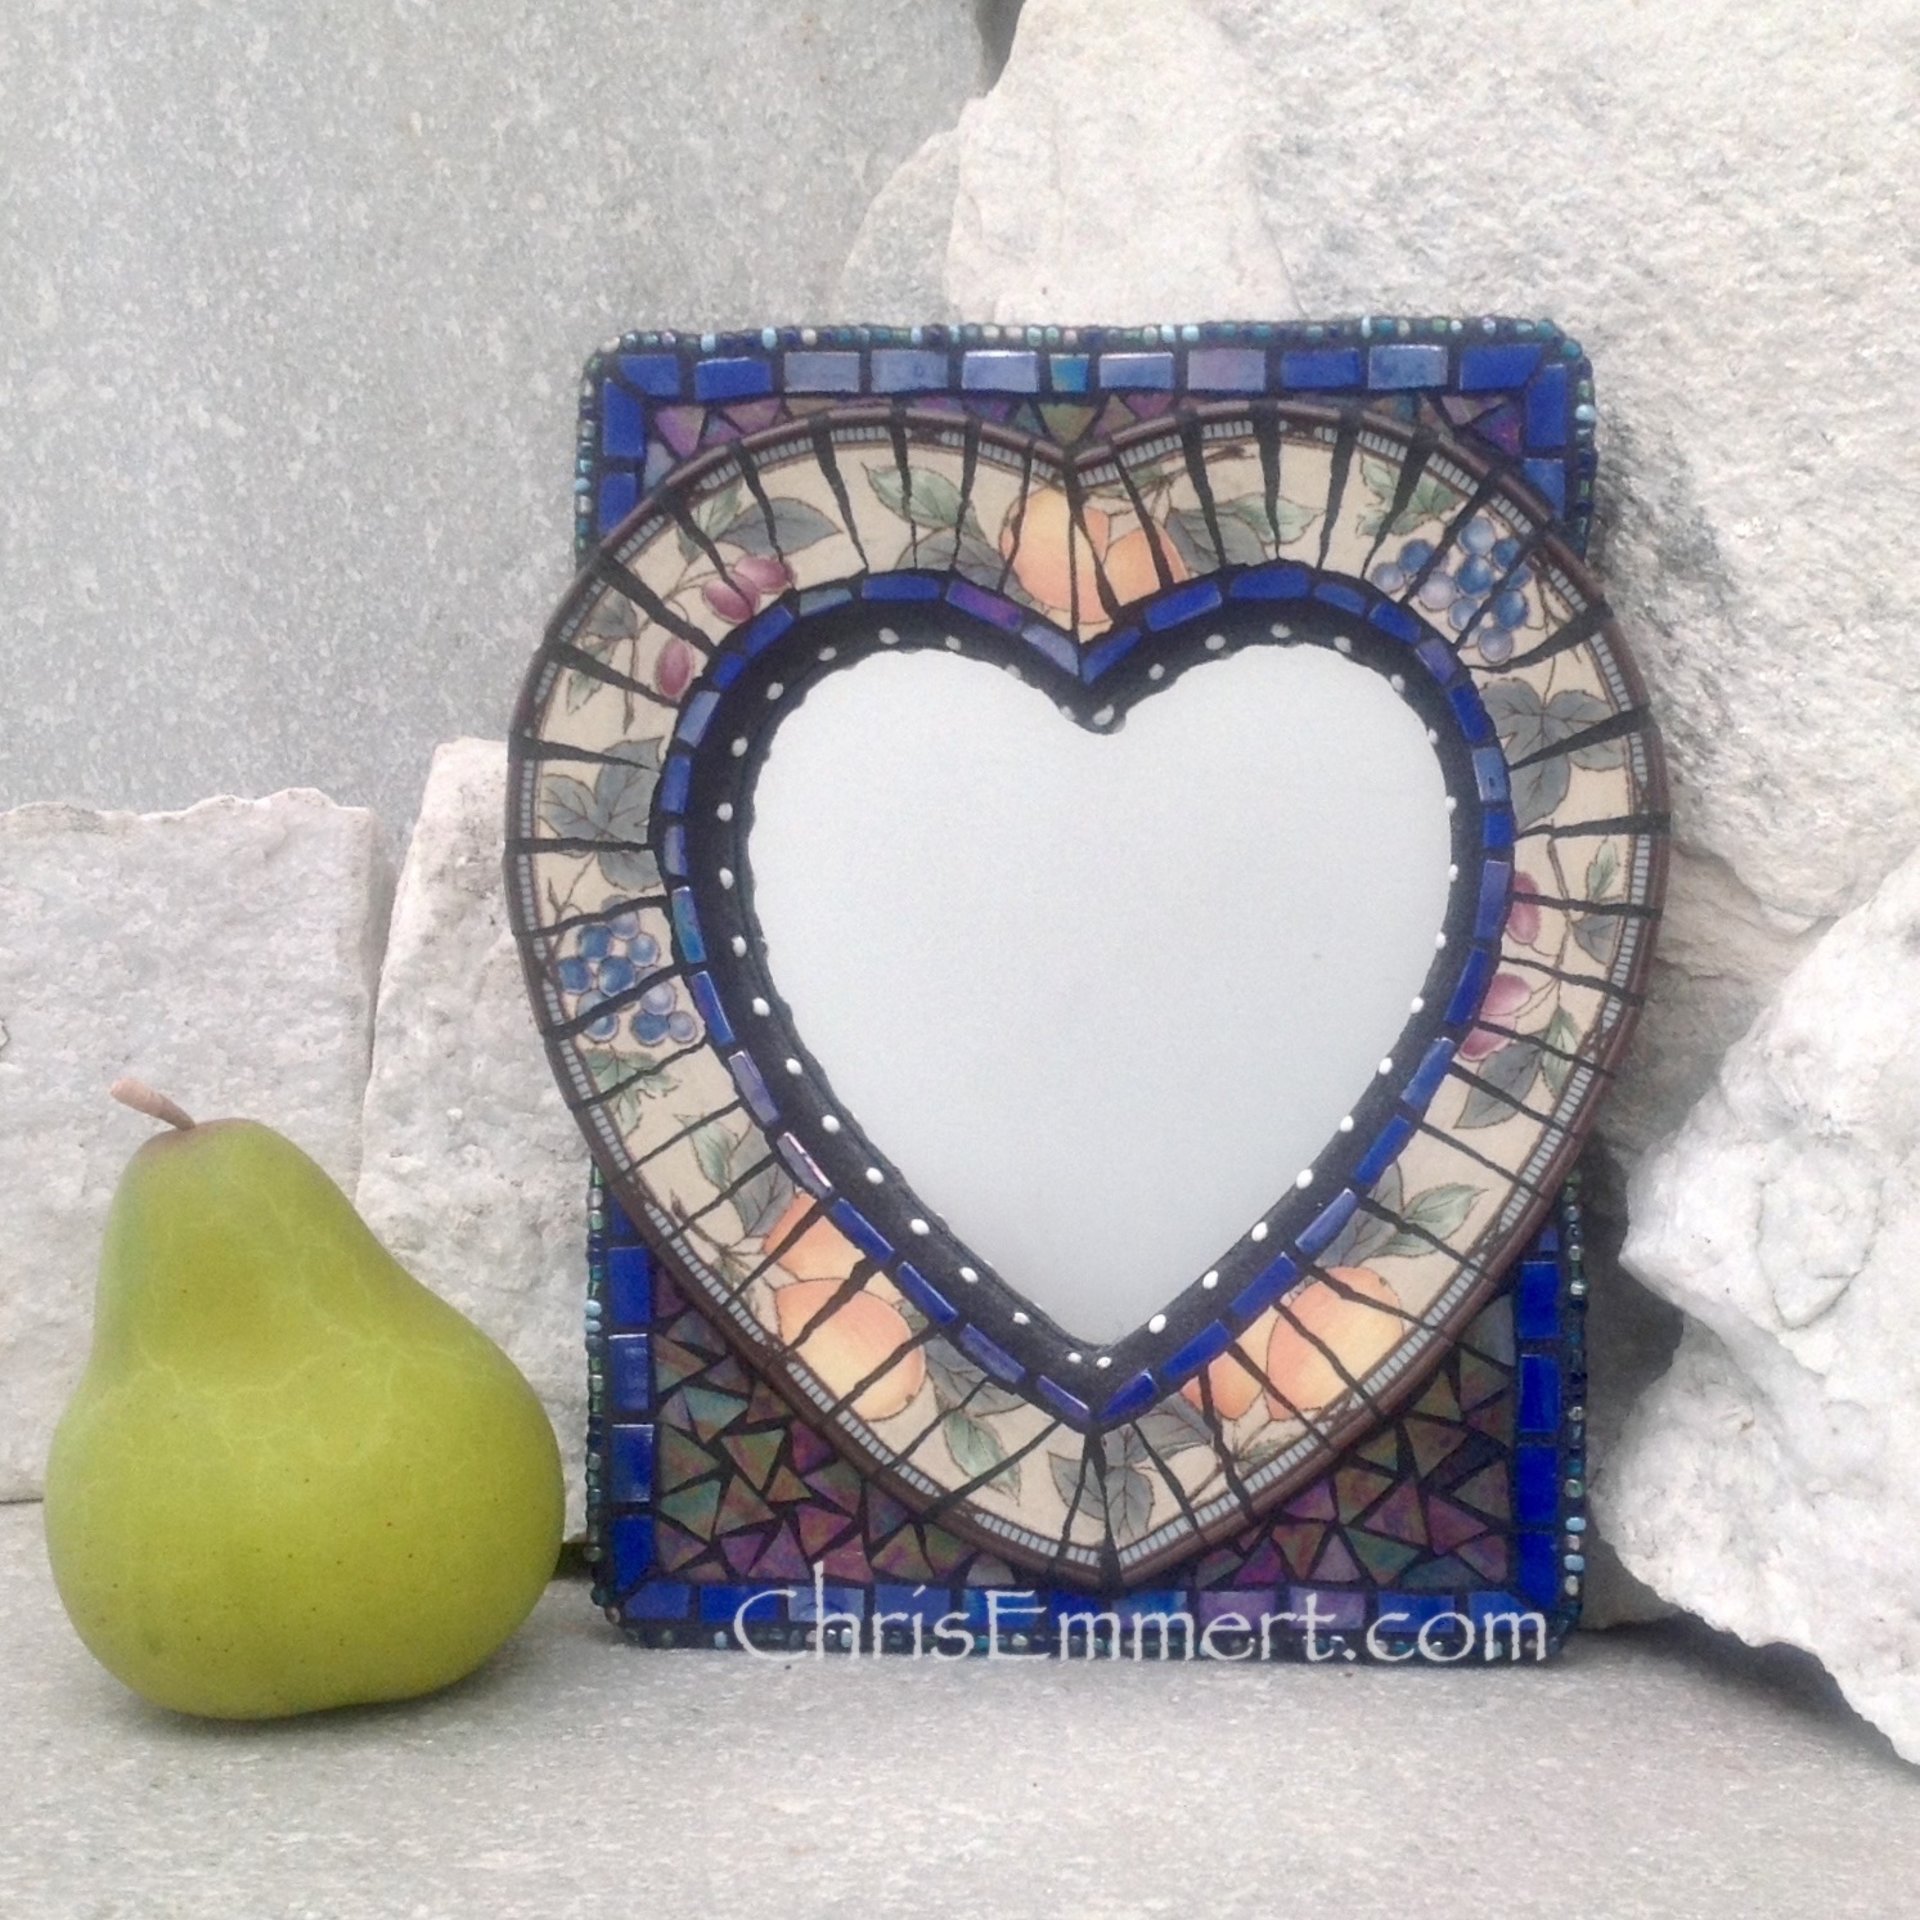 Mixed Media Mosaic Mirror, #1, Heart Shaped Mirror, Home Decor